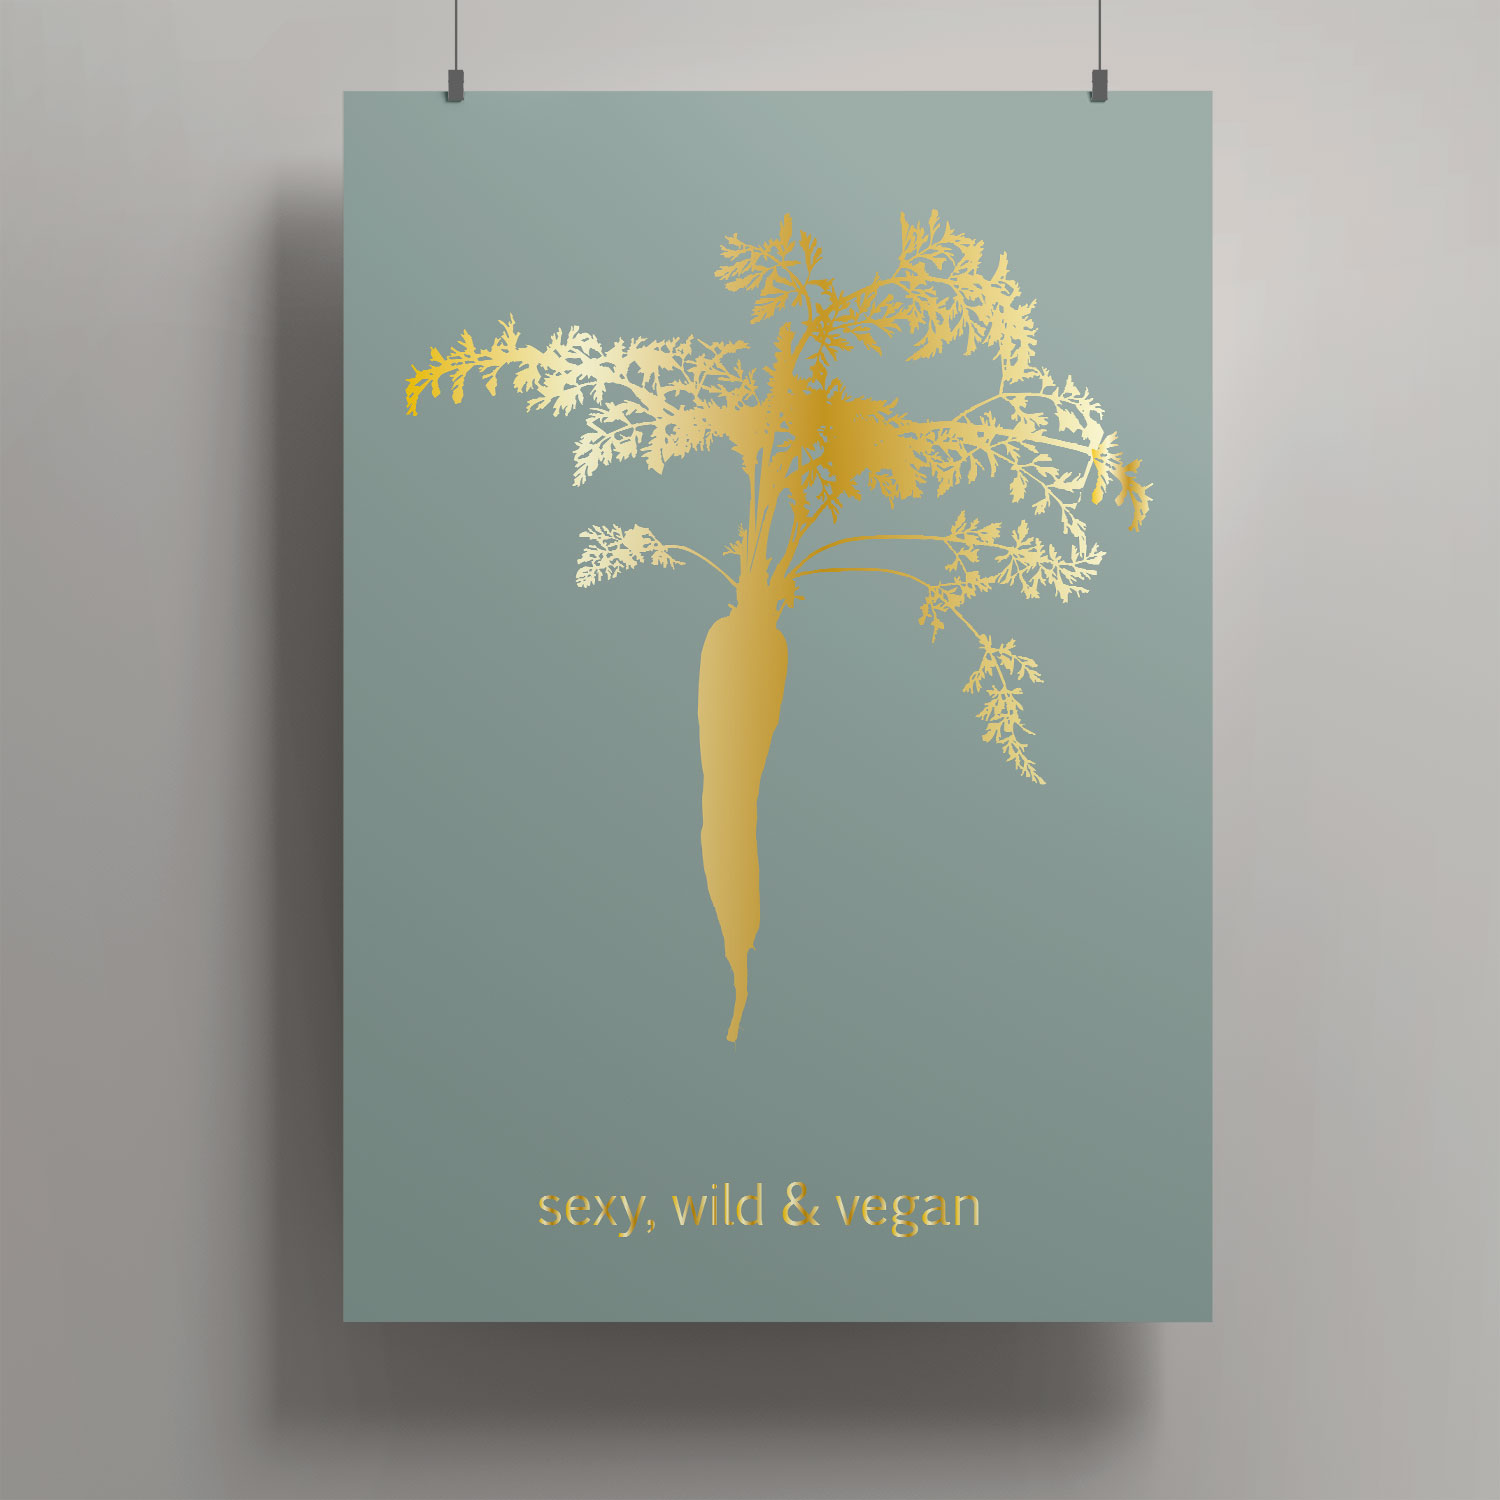 Artprint A4 - Toni Starck - sexy, wild & vegan